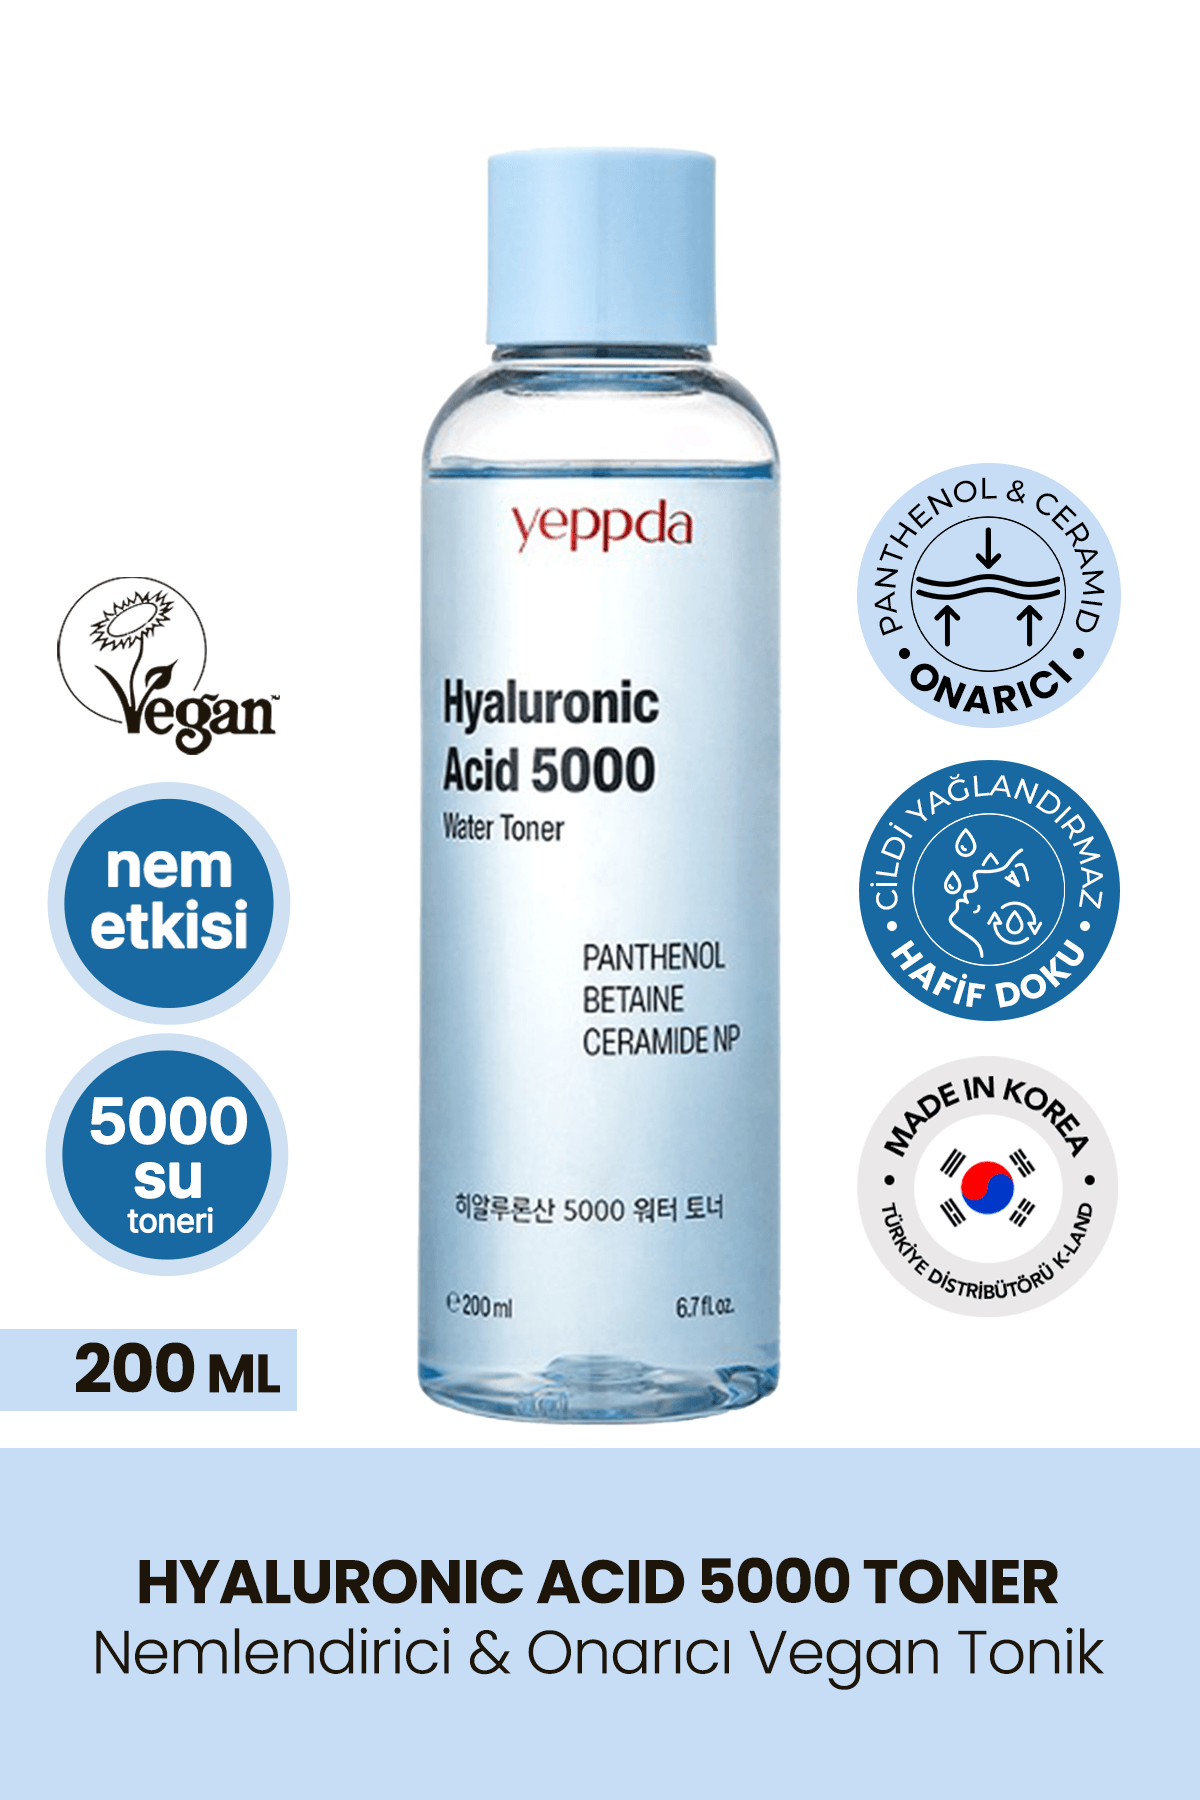 Nemlendirici Hyalüronik Asit İçeren Vegan Tonik Yeppda Hyaluronic Acid 5000 Water Toner 200ml